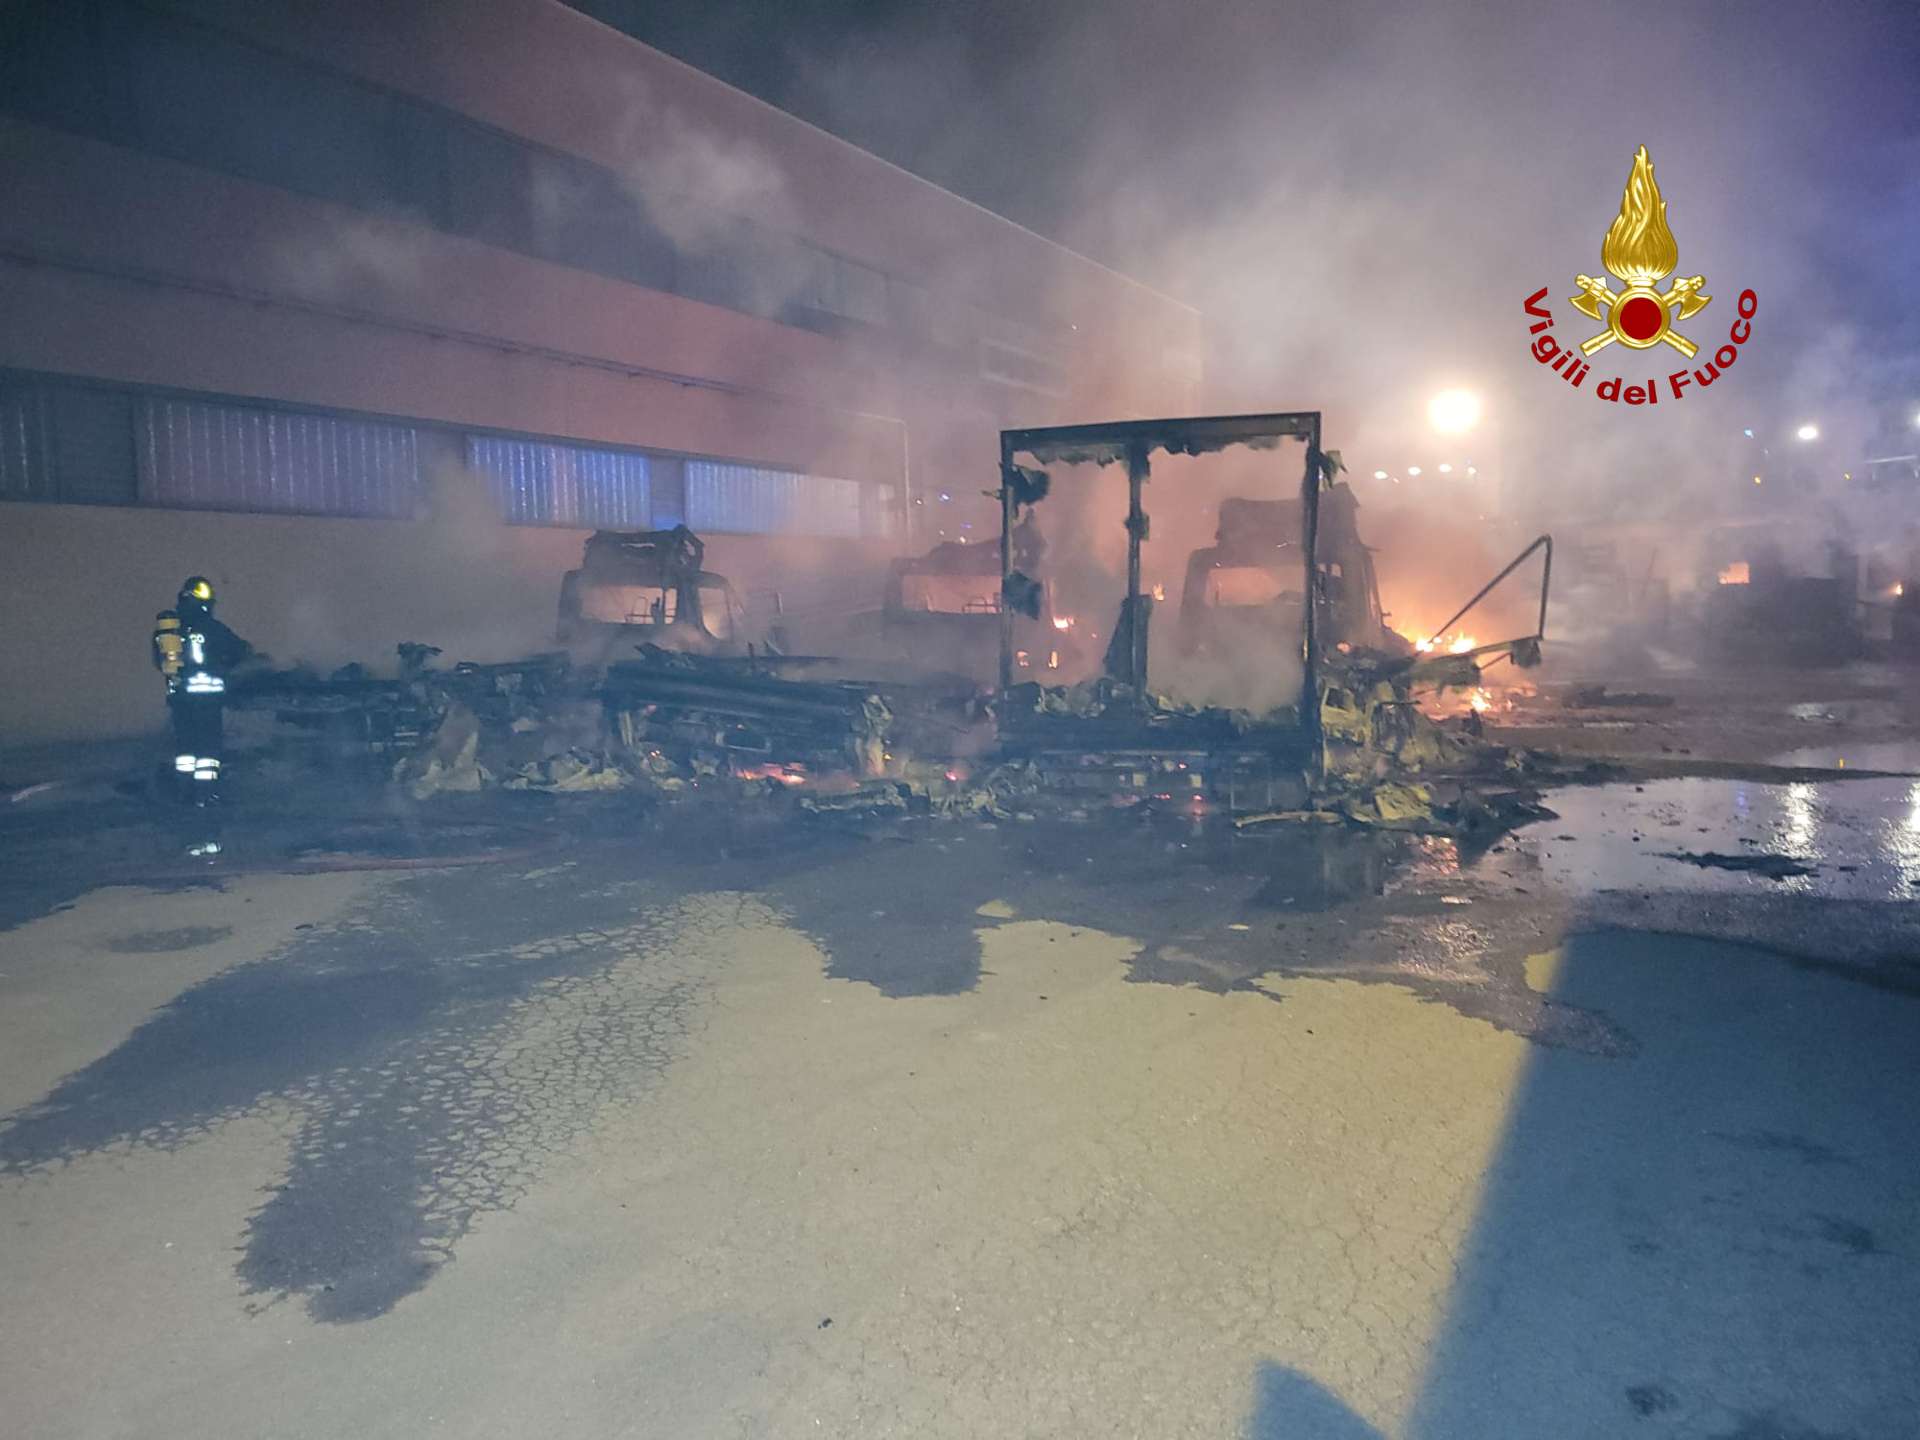 attentato incendio marr stabilimento carasco genova_03